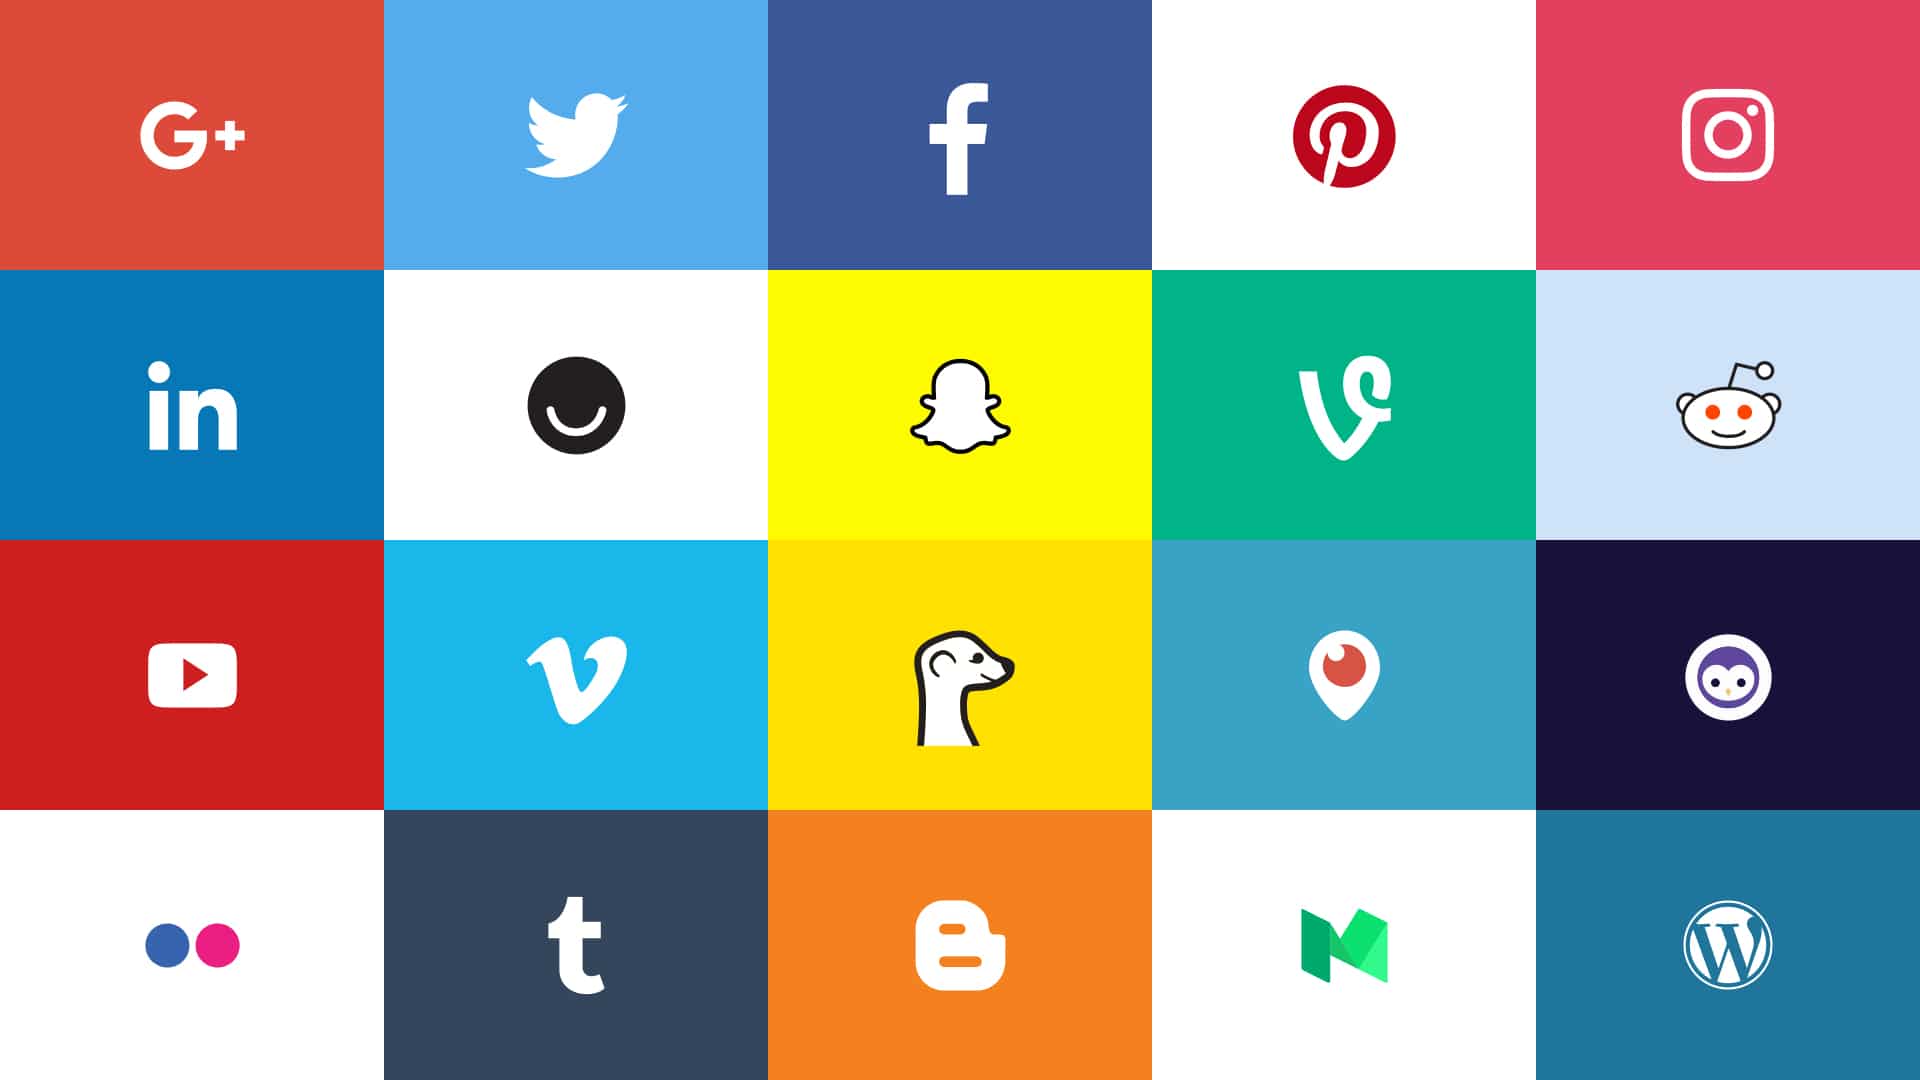 Facebook All Logo - Social Media Logos 2017: Top 20 Networks Official Assets • Dustn.tv